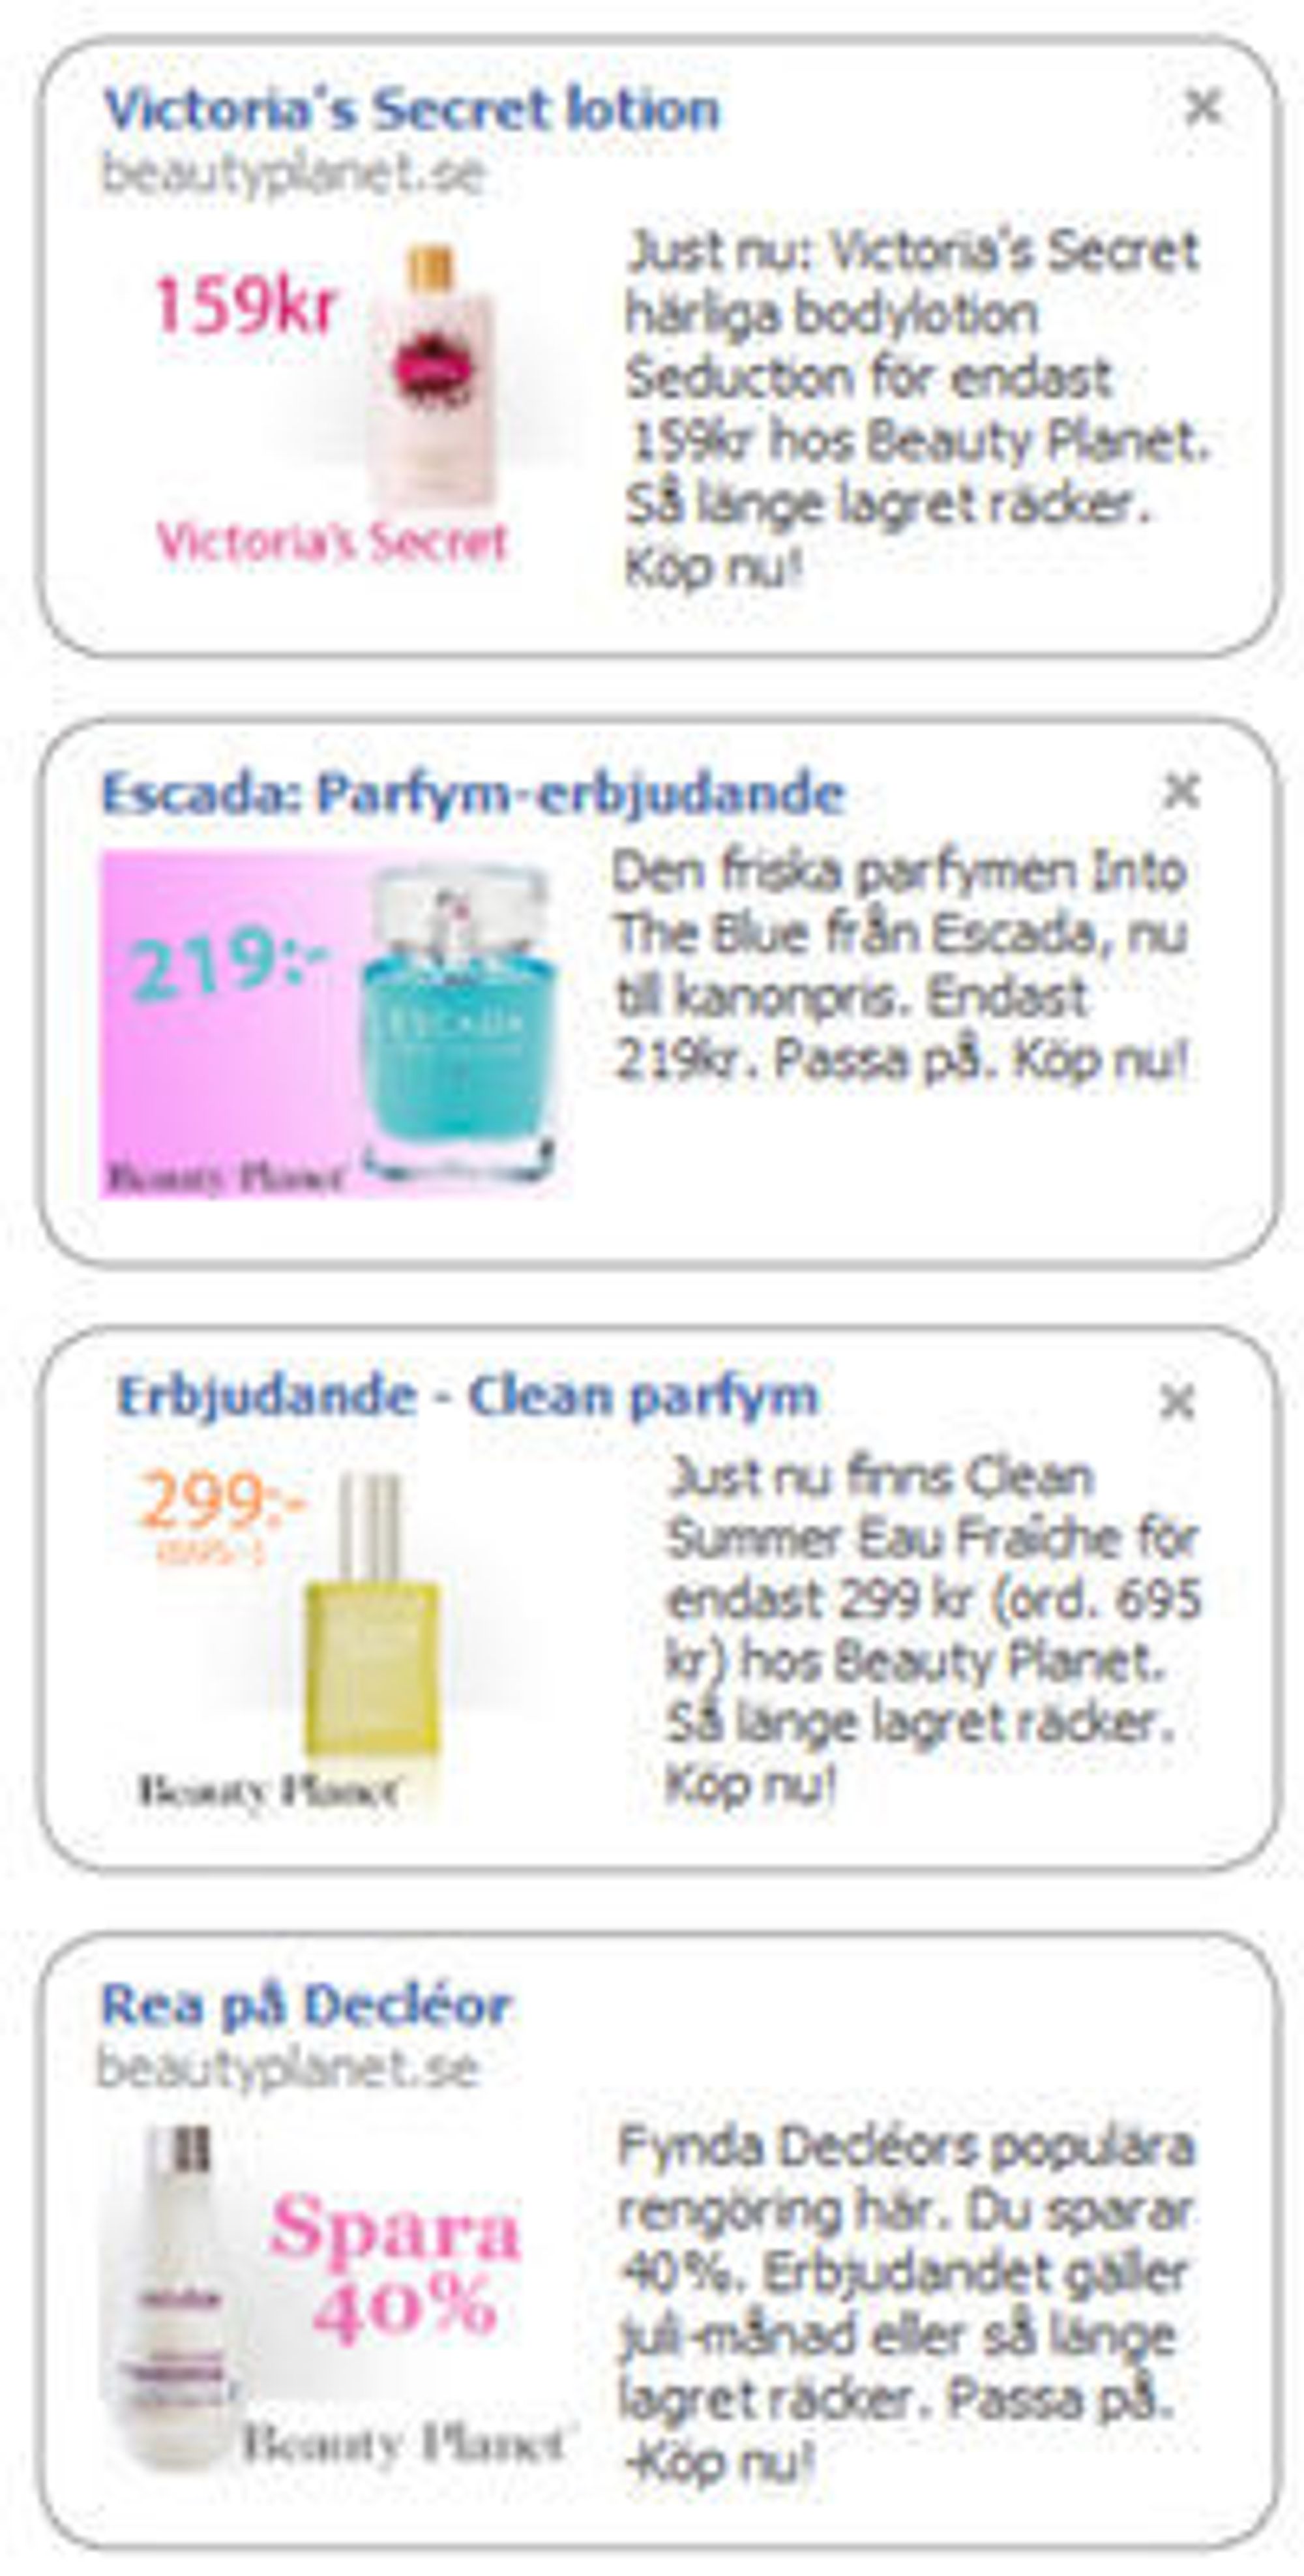 Eksempler på BeautyPlanet.se-annonser på Facebook.